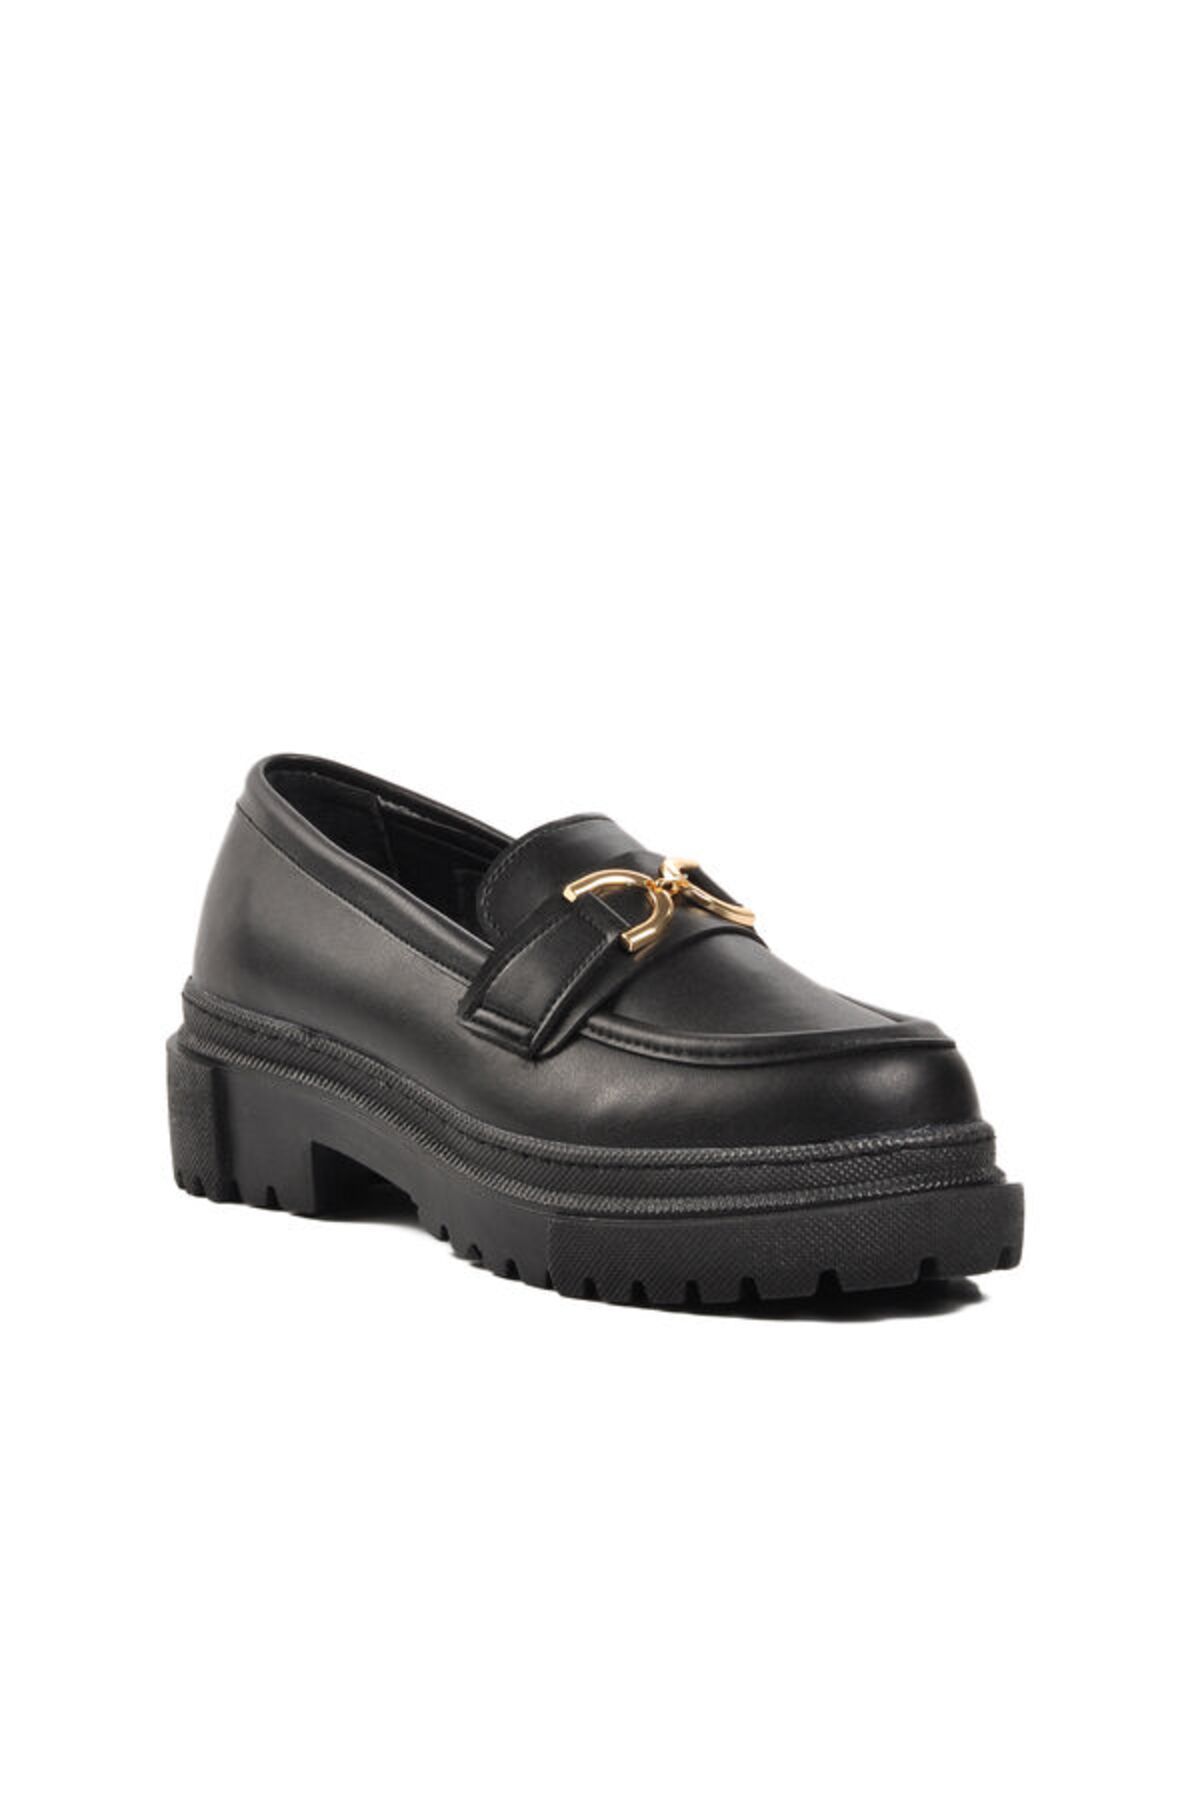 WALKWAY Siyah Kadın Loafer Ayakkabı